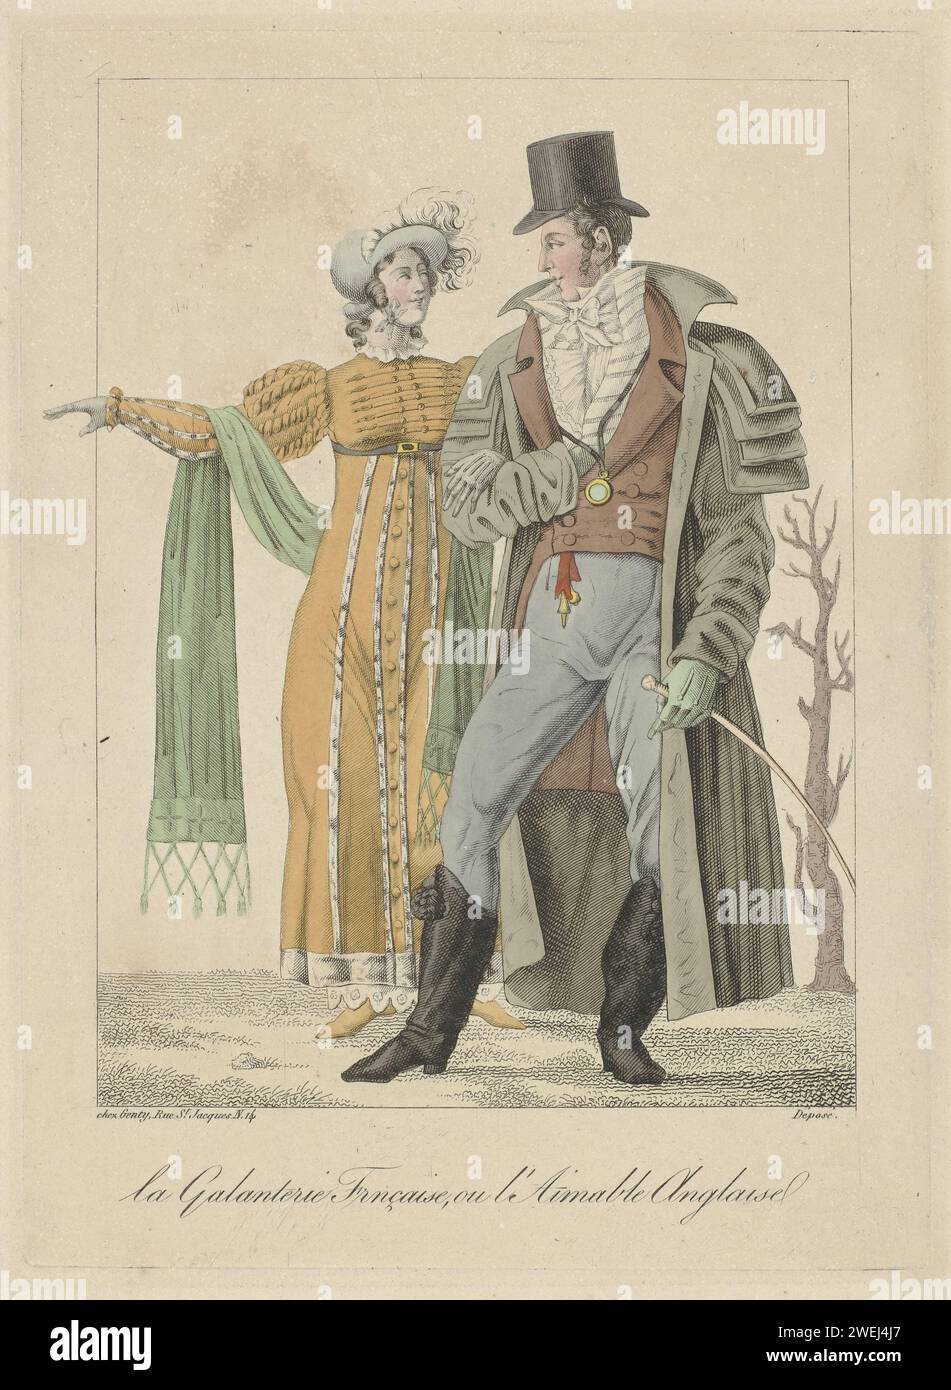 Französische Galanterie oder englischer Charme, ca. 1810 - ca. 1812 Mann und Frau sind bewaffnet. Sie trägt ein hochrangiges Kleid mit erhöhter Taille und langen Ärmeln. Zubehör: Hut mit Federn und Balken, Schal mit Fransen, Gürtel, Schuhe mit spitzen Nasen an den Enden. Er trägt einen Mantel (Carrick) mit vier Schulterkragen, Freak mit zwei Reihen Knoten, gestreifte Weste und lange Hosen. Krawatte und Hemd mit zerknittertem Jabot. Zubehör: Hut, Monokel an einer Schnur, Handschuhe, Breloque, Peitsche, Stiefel mit Bürsten und Fersen. Papiergravur/Ätzen von Modeplatten. Kopfbedeckung: Hut (+ Damenbekleidung). d Stockfoto